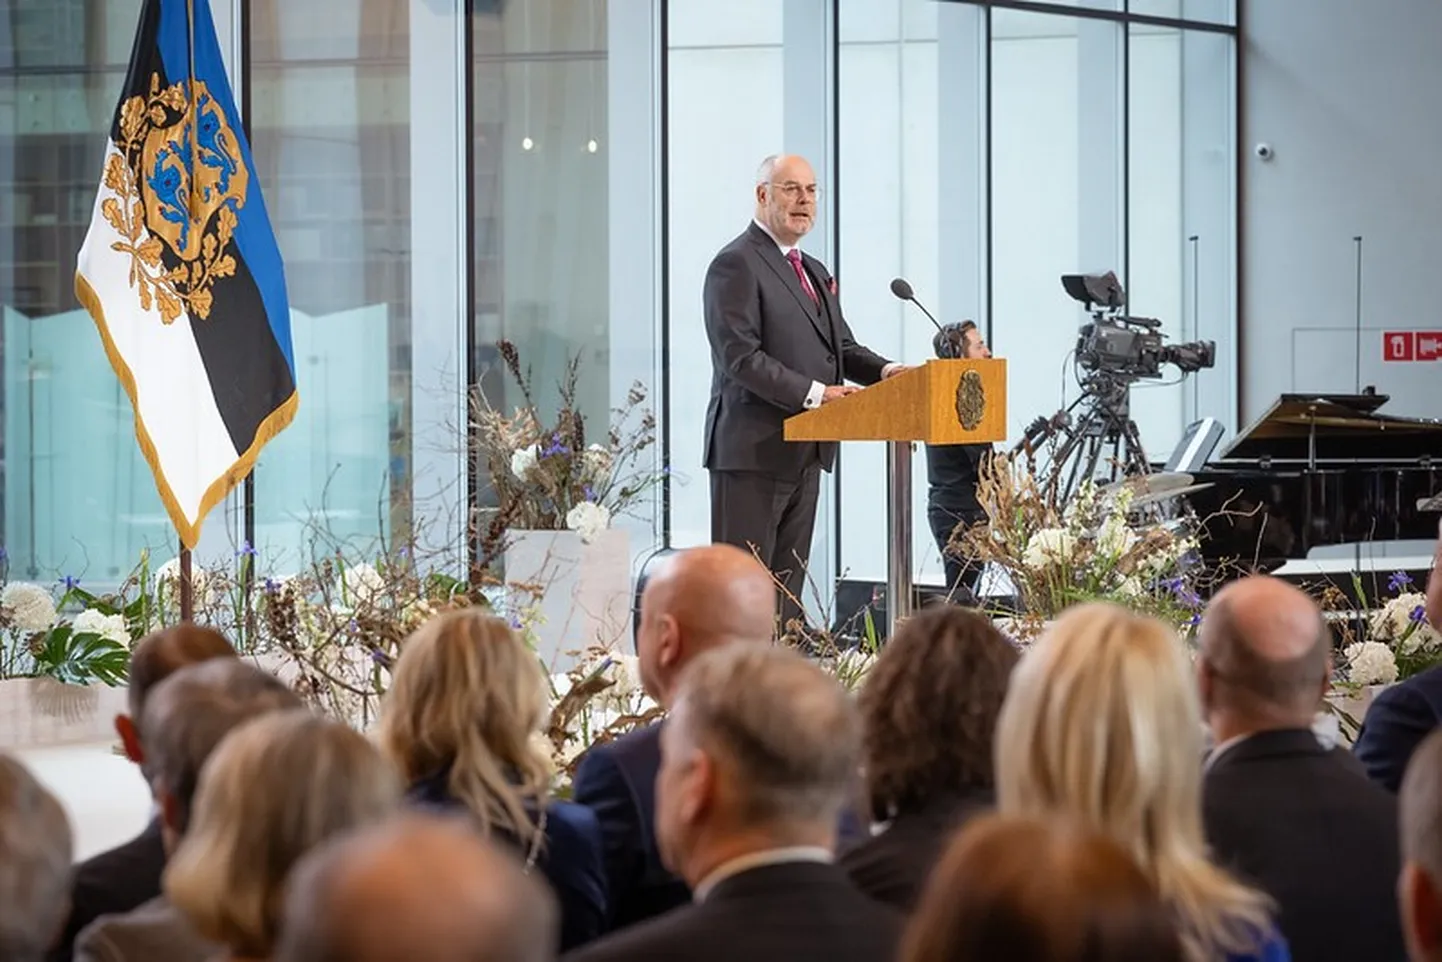 Алар Карис выступает на церемонии «Эстония благодарит».